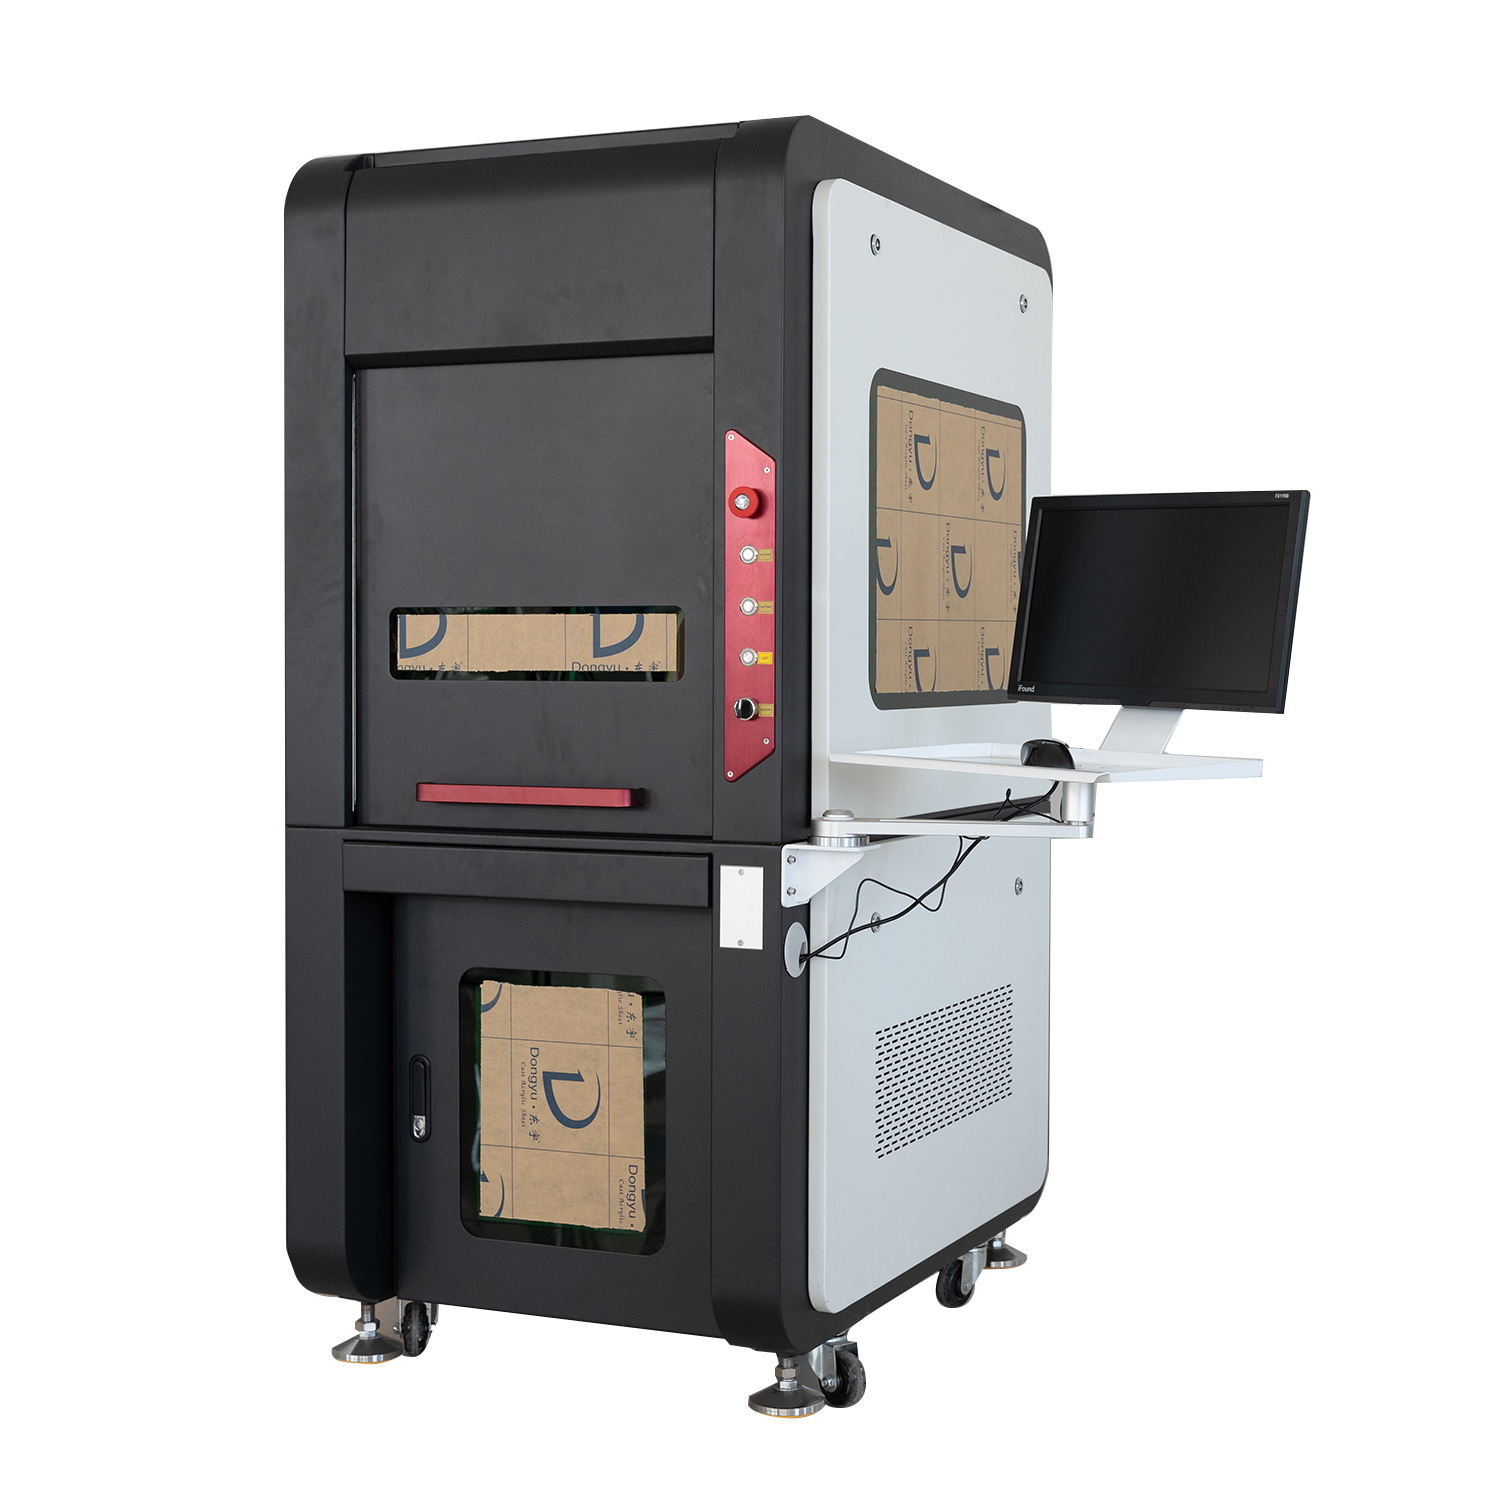 20W 30W JPT MOPA Faserlaser-Markierungsmaschine Laserengraver mit Rotary